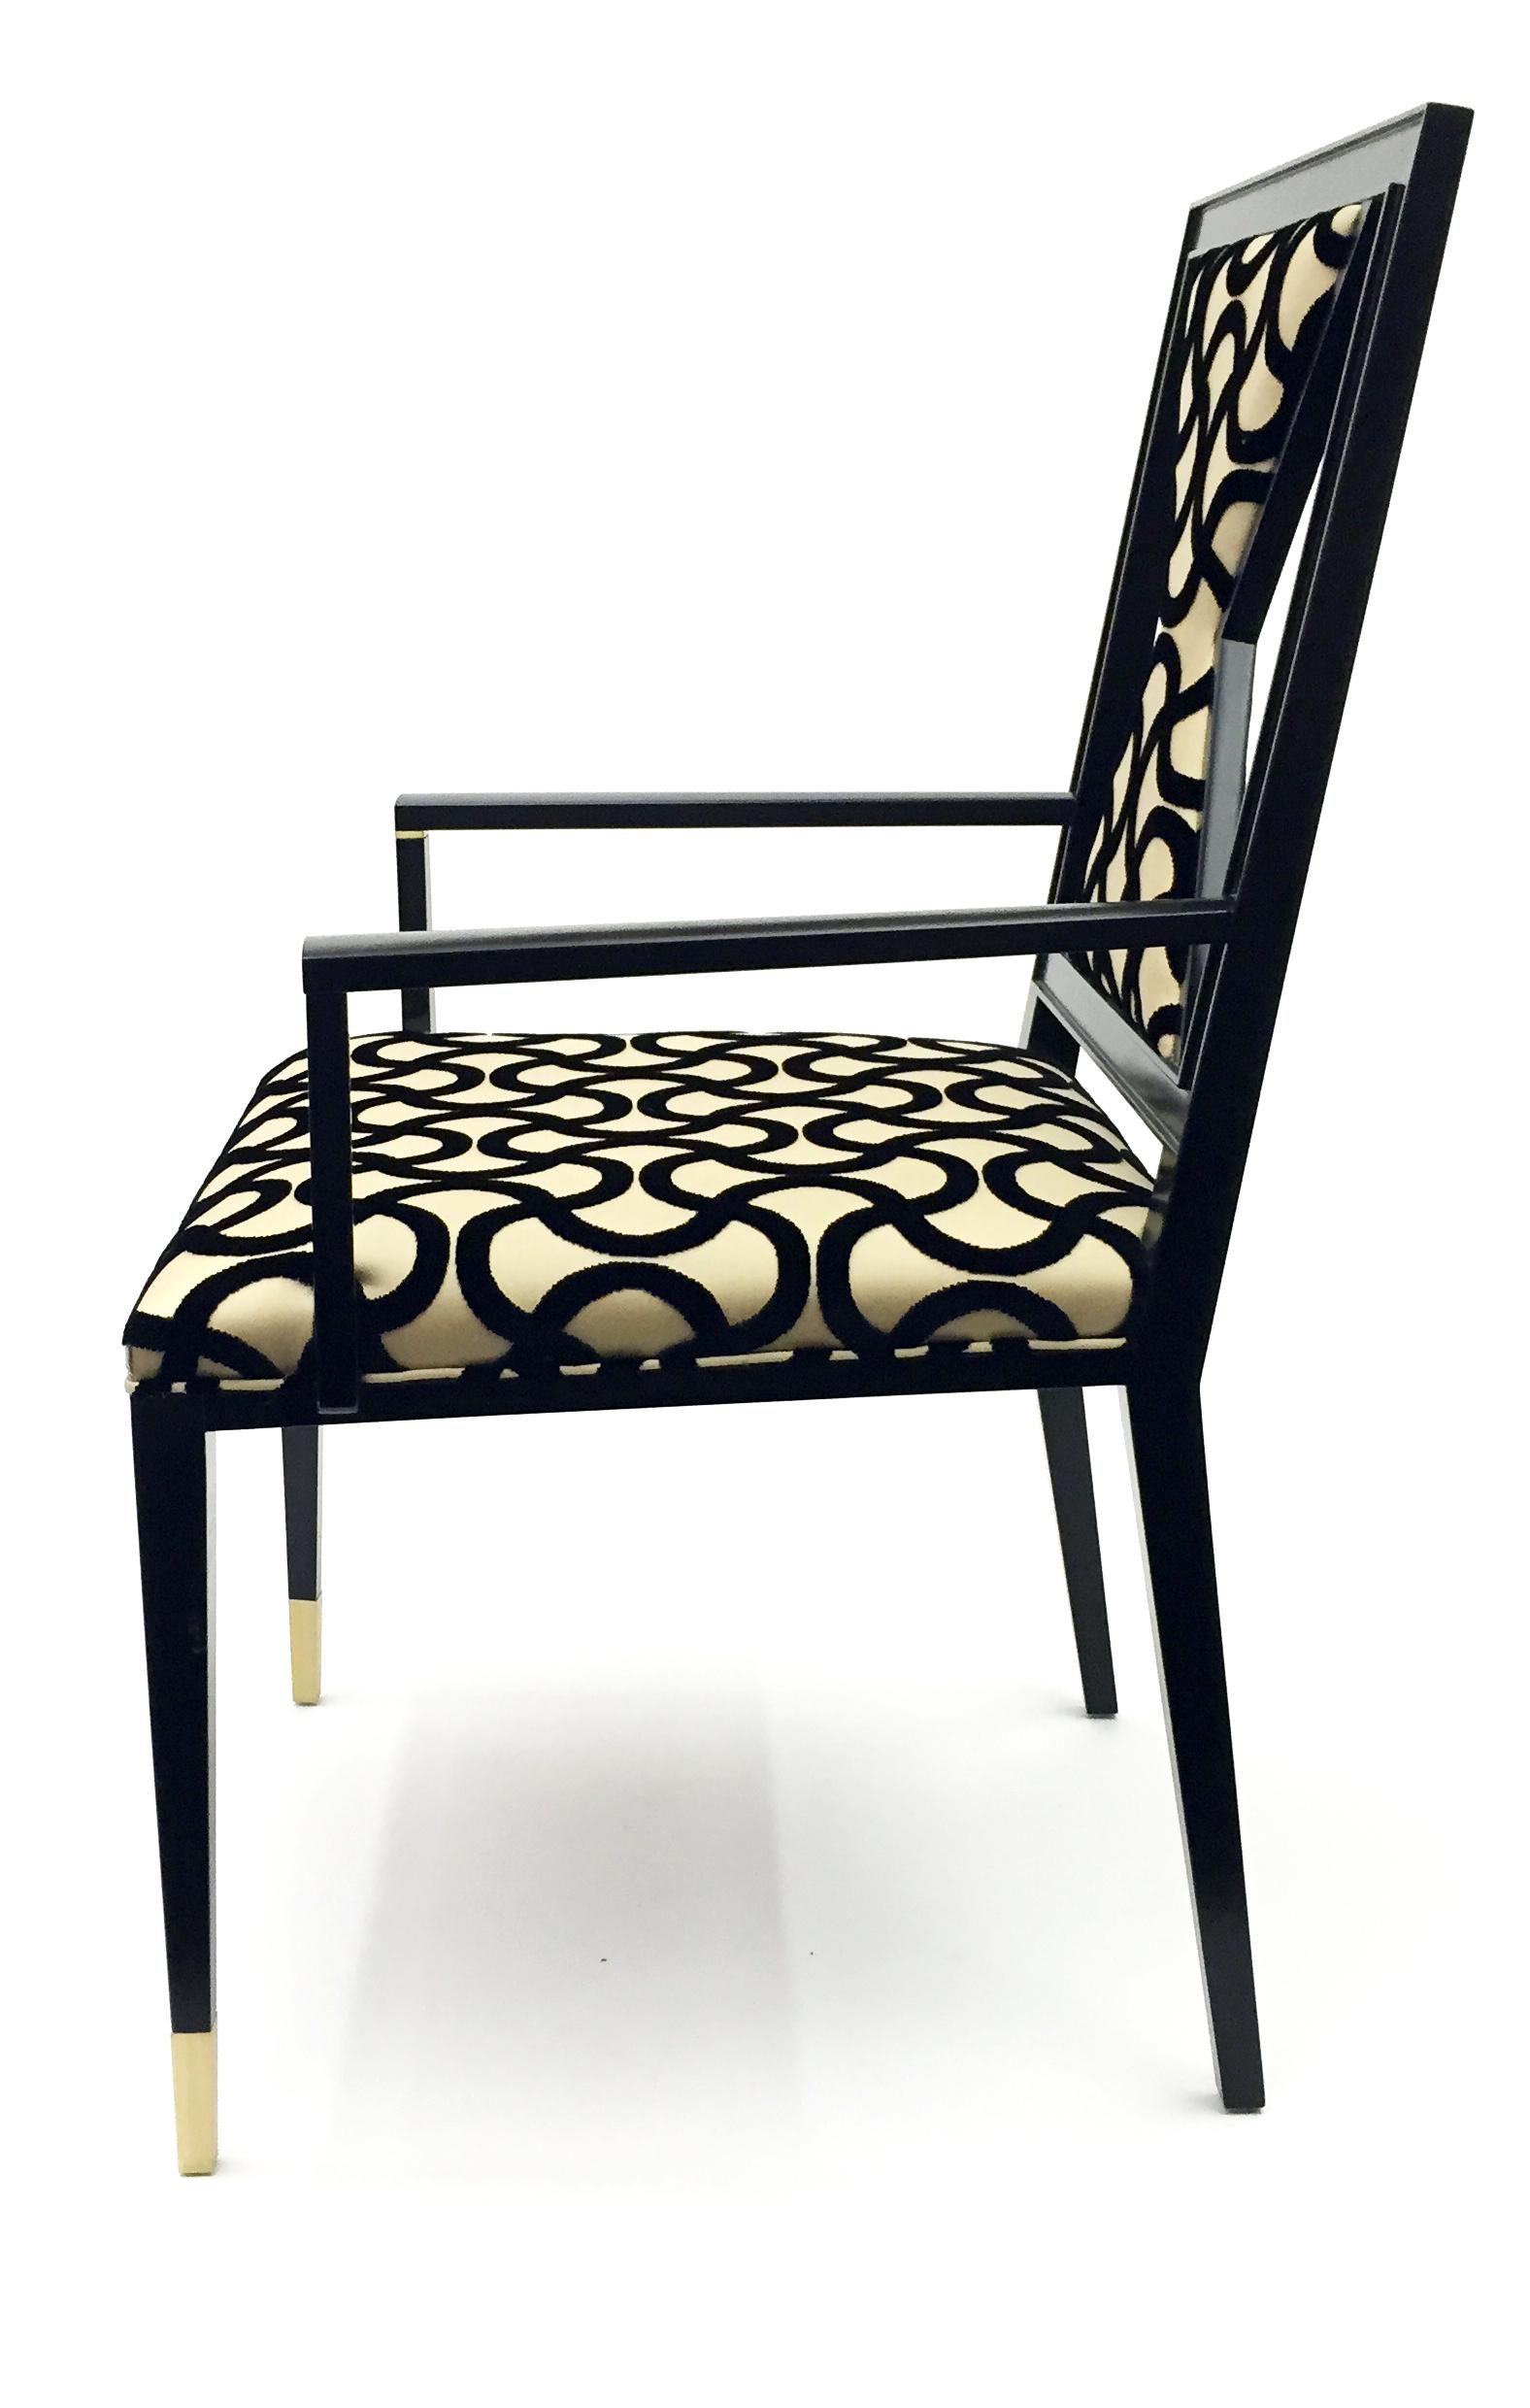 Zeitgenössischer Sessel aus Holz, entworfen von Juan Montoya. Dieses einzigartige Stück hat Messingdetails und eine geometrisch geformte Rückenlehne. Es ist mit einem gemusterten Stoff gepolstert, der vom Designer ausgewählt wurde, um Bewegung zu